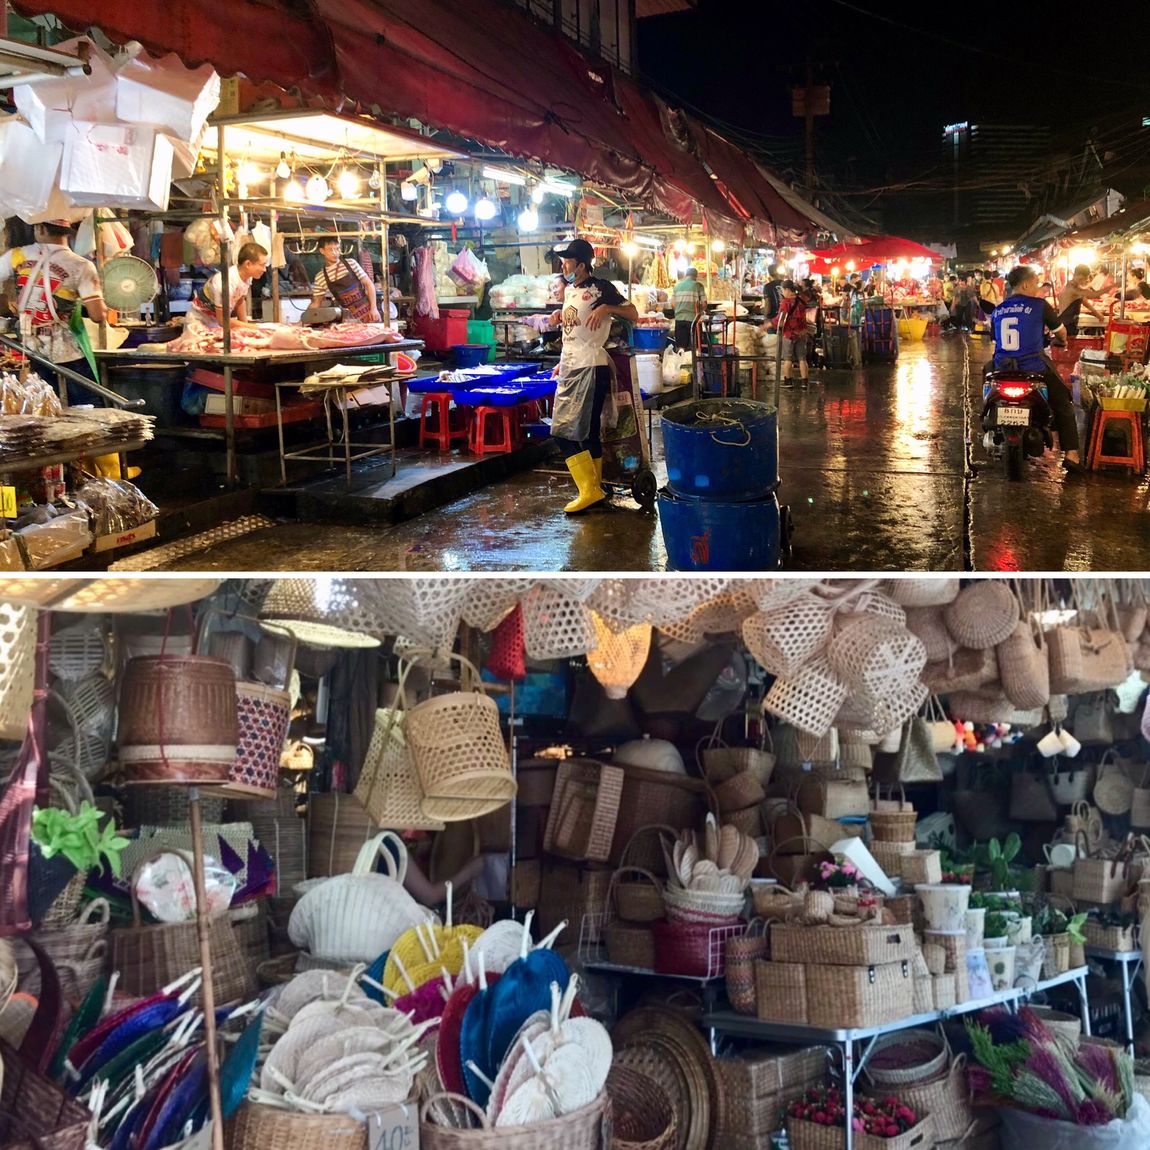 【銀座】「世界の無印良品」紹介 | MUJI THAILANDのMUJI Samyan Mitrtown店舗と地域